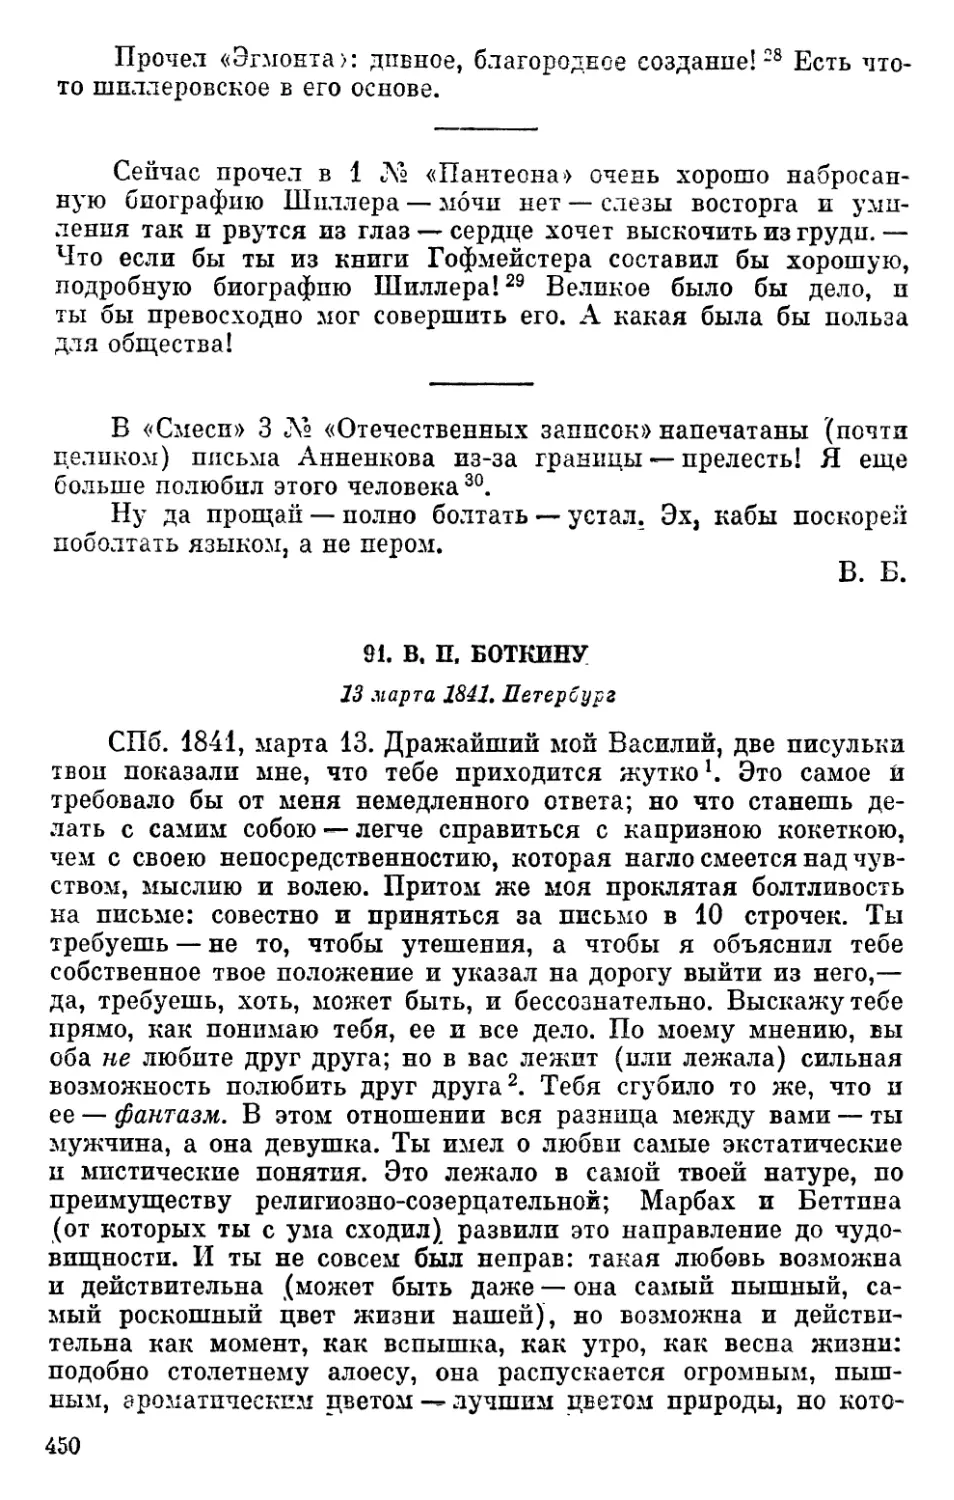 91. В. П. Боткину. 13 марта 1841